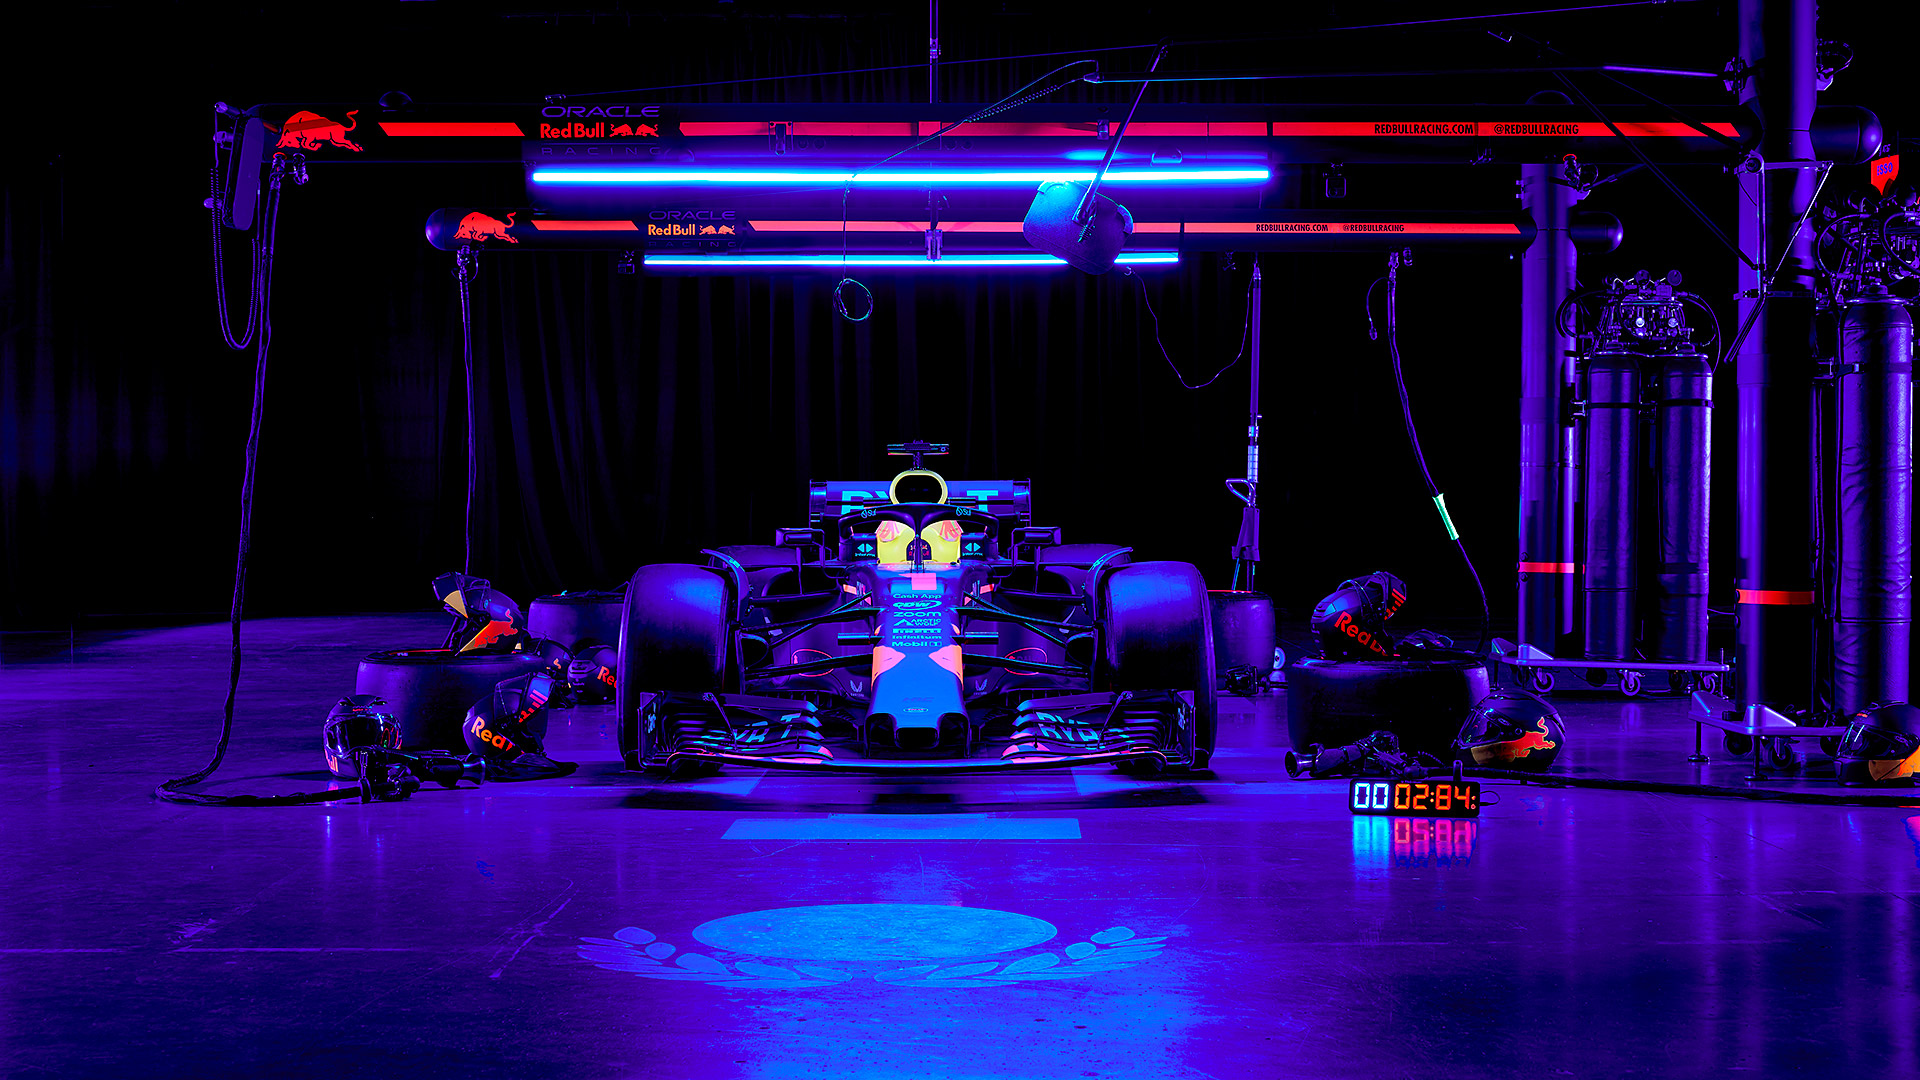  2023 Red Bull Racing RB19 Wallpaper.